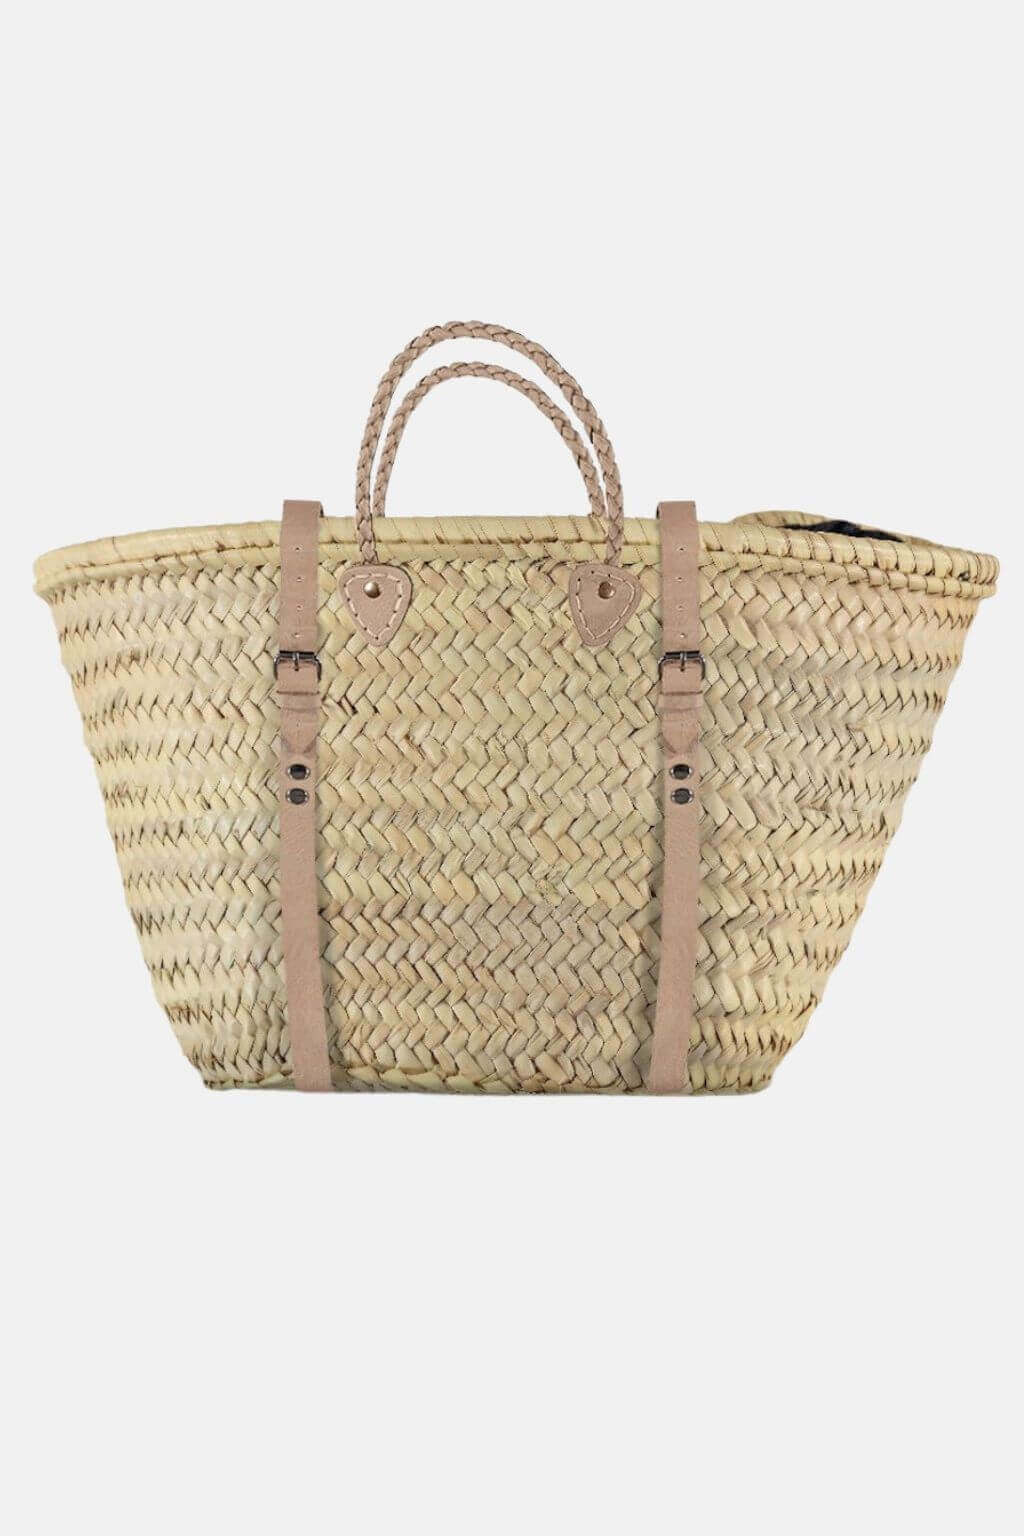 Market Backpack, Straw basket, Woven palm leaf backpack, Straw